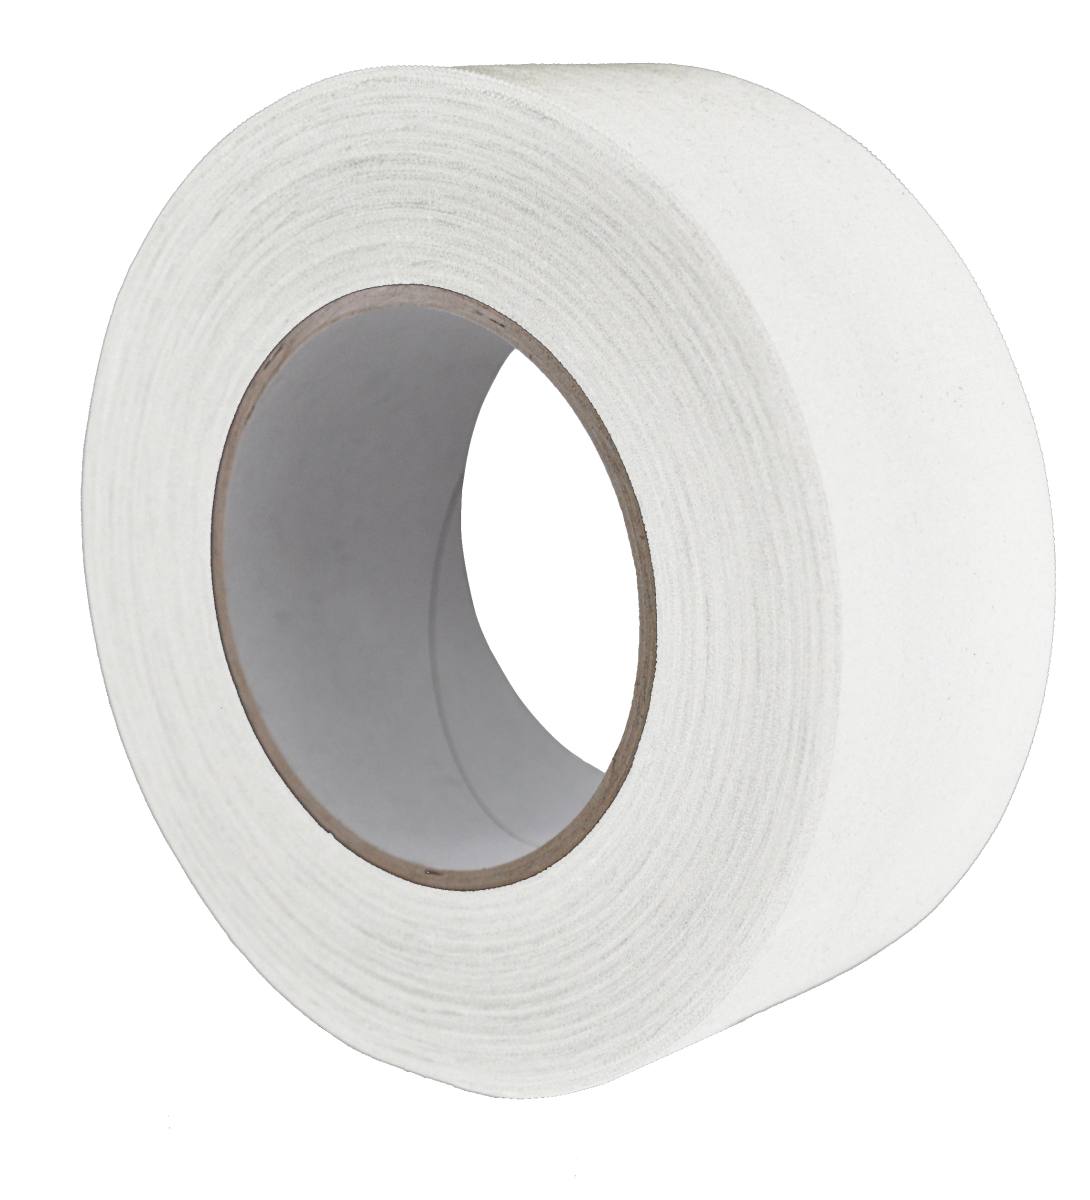 S-K-S 970 Raw fabric adhesive tape, 75 mm x 50 m, white, 0.240 mm